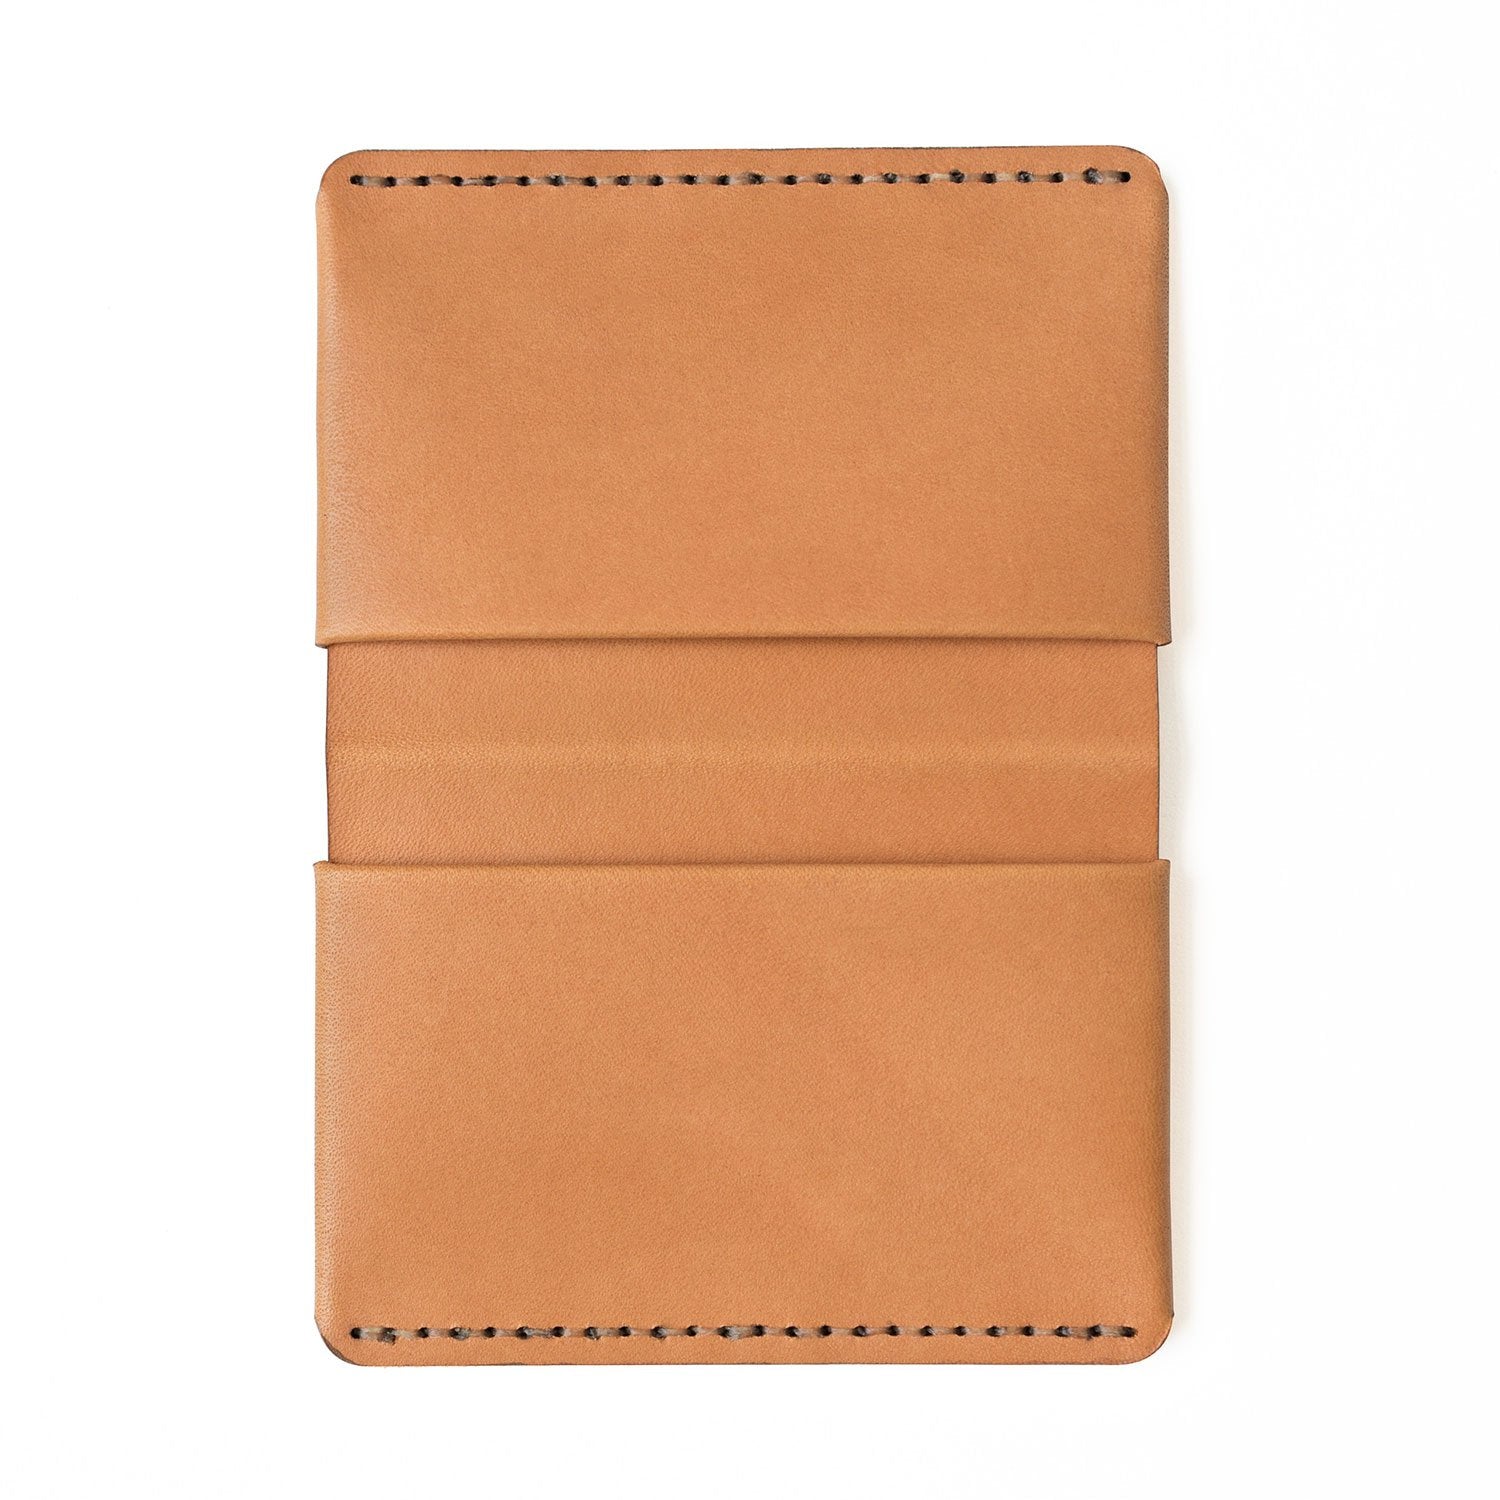 Edge Four Wallet Tan Leather